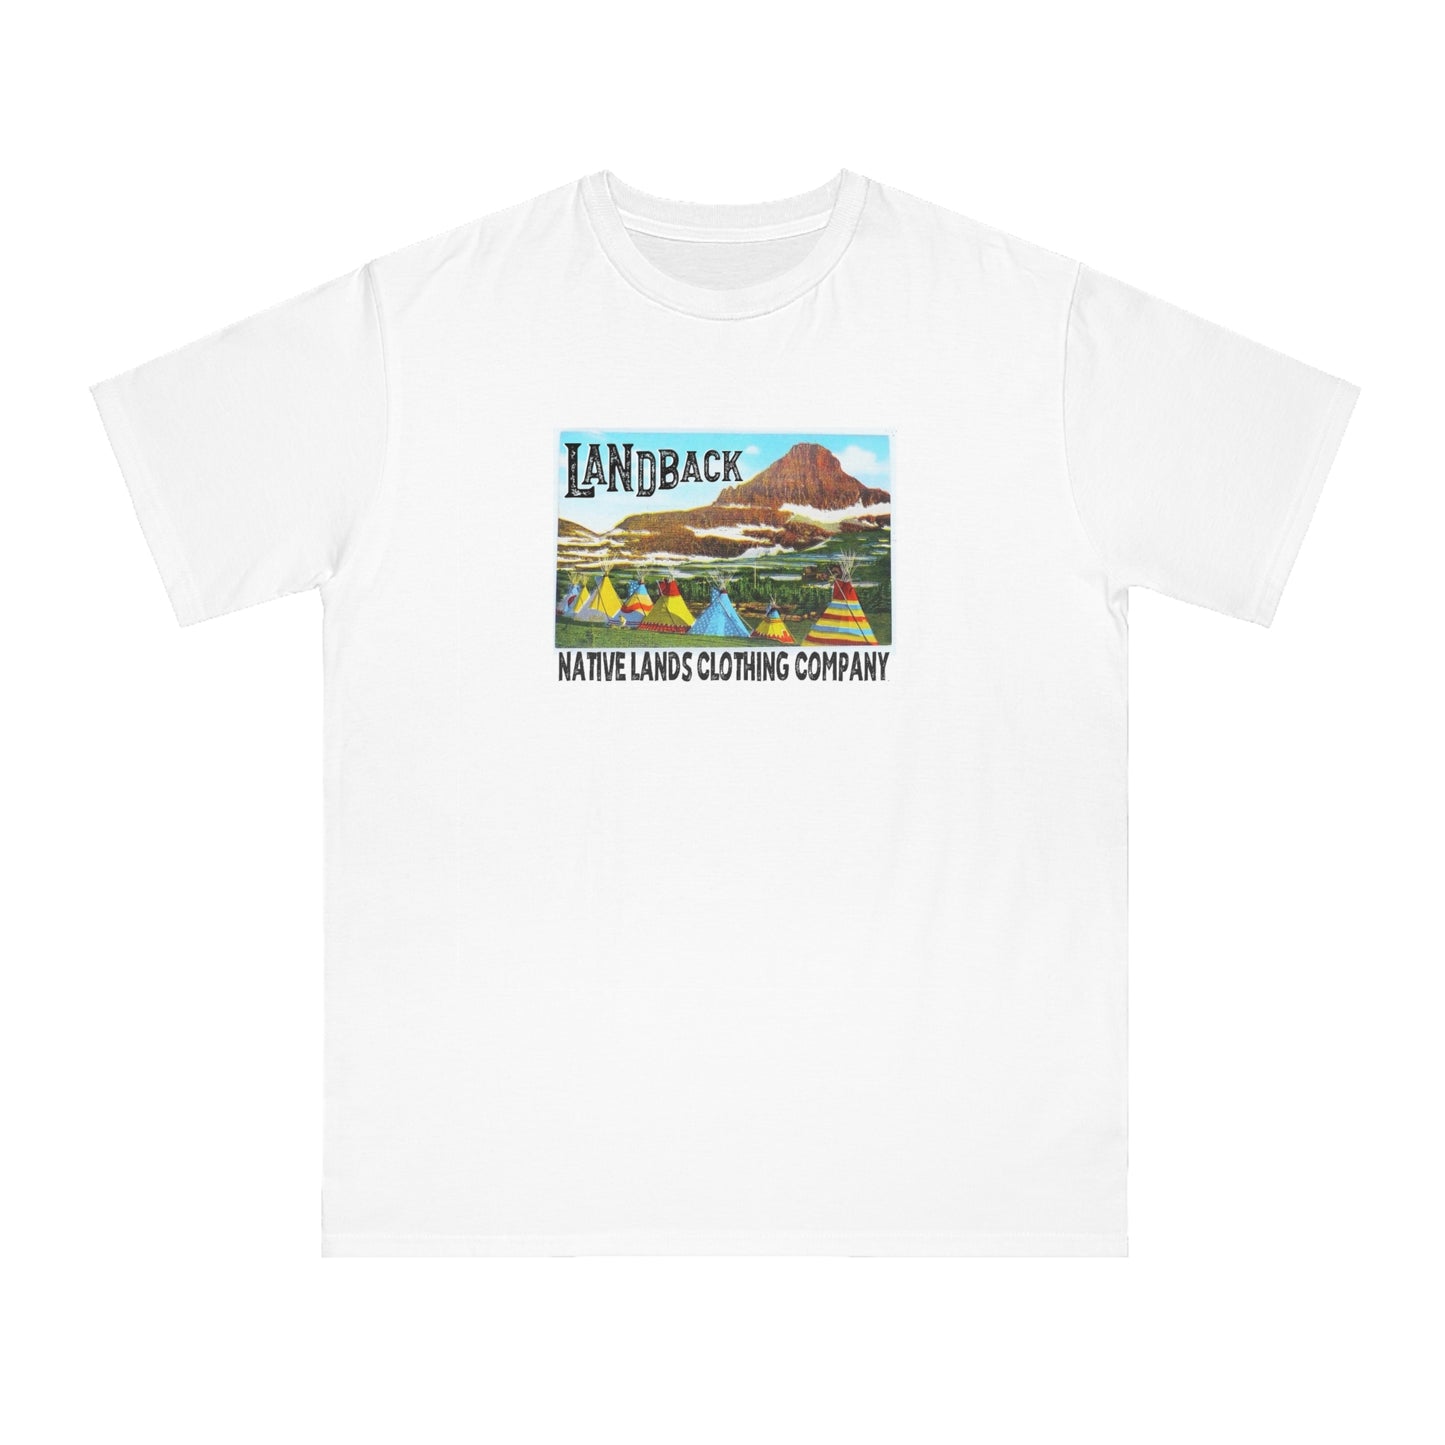 Рубашка Landback из органического хлопка для коренных американцев